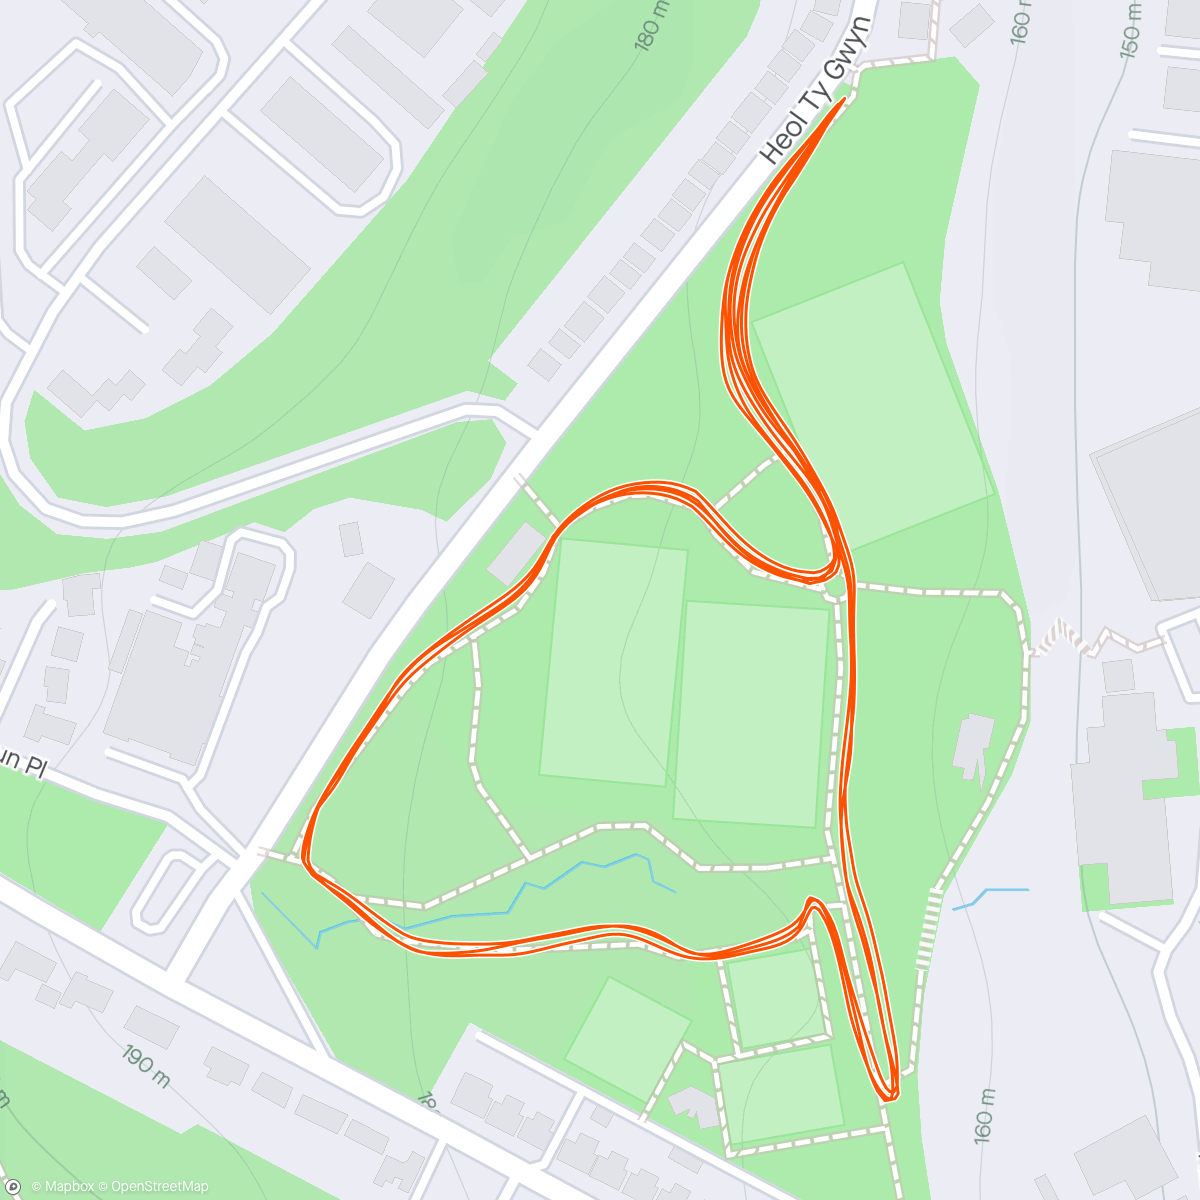 「Maesteg Parkrun」活動的地圖